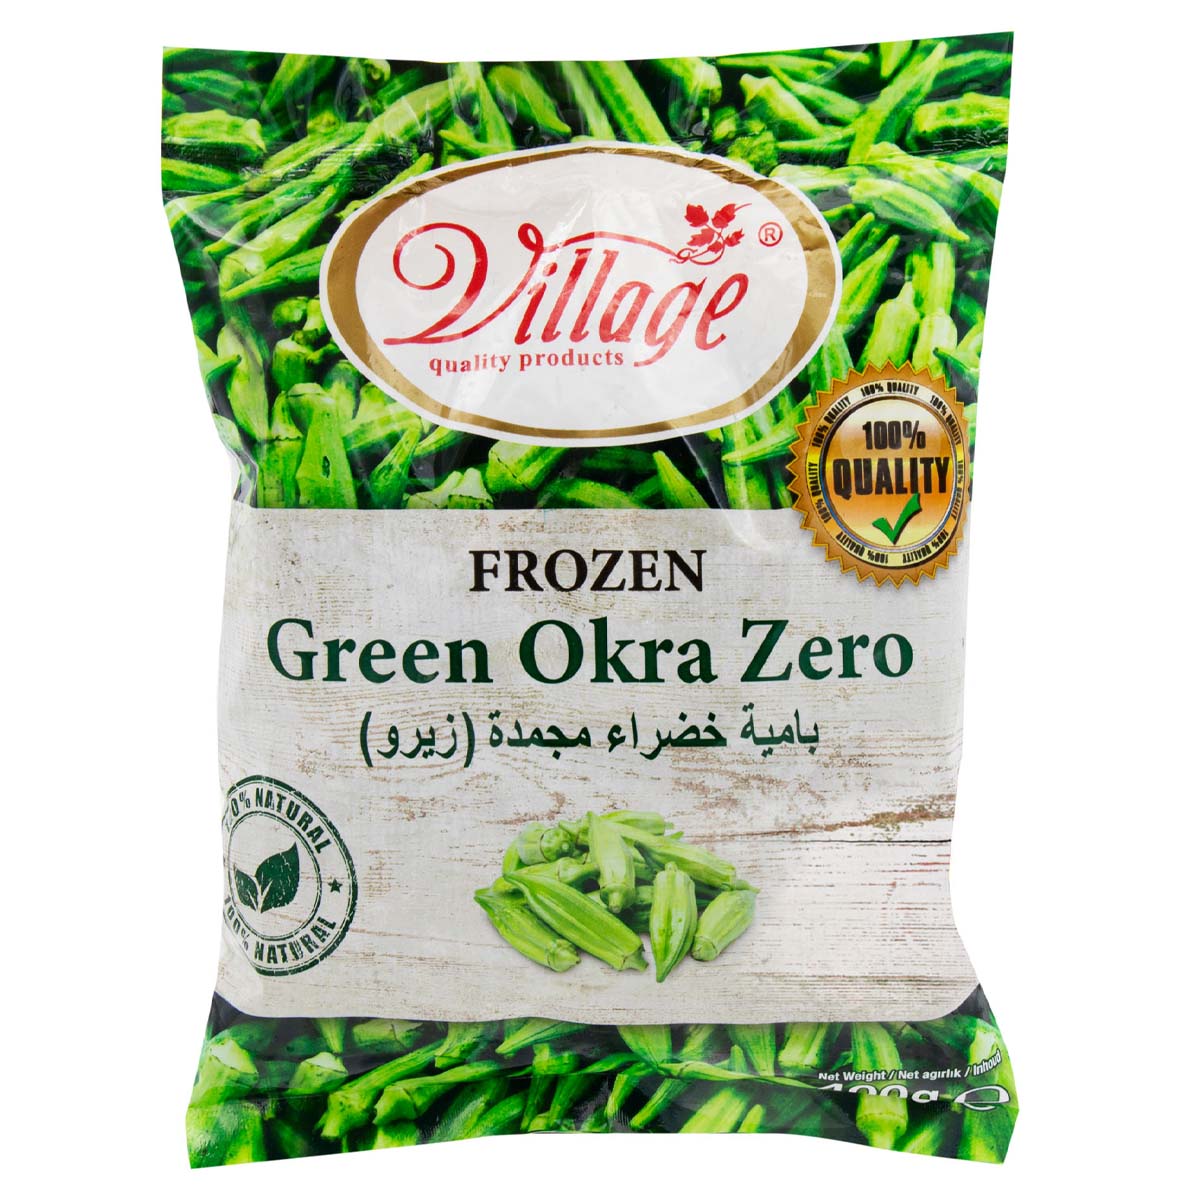 Village - Frozen Green Okra Zero - 400g - Continental Food Store